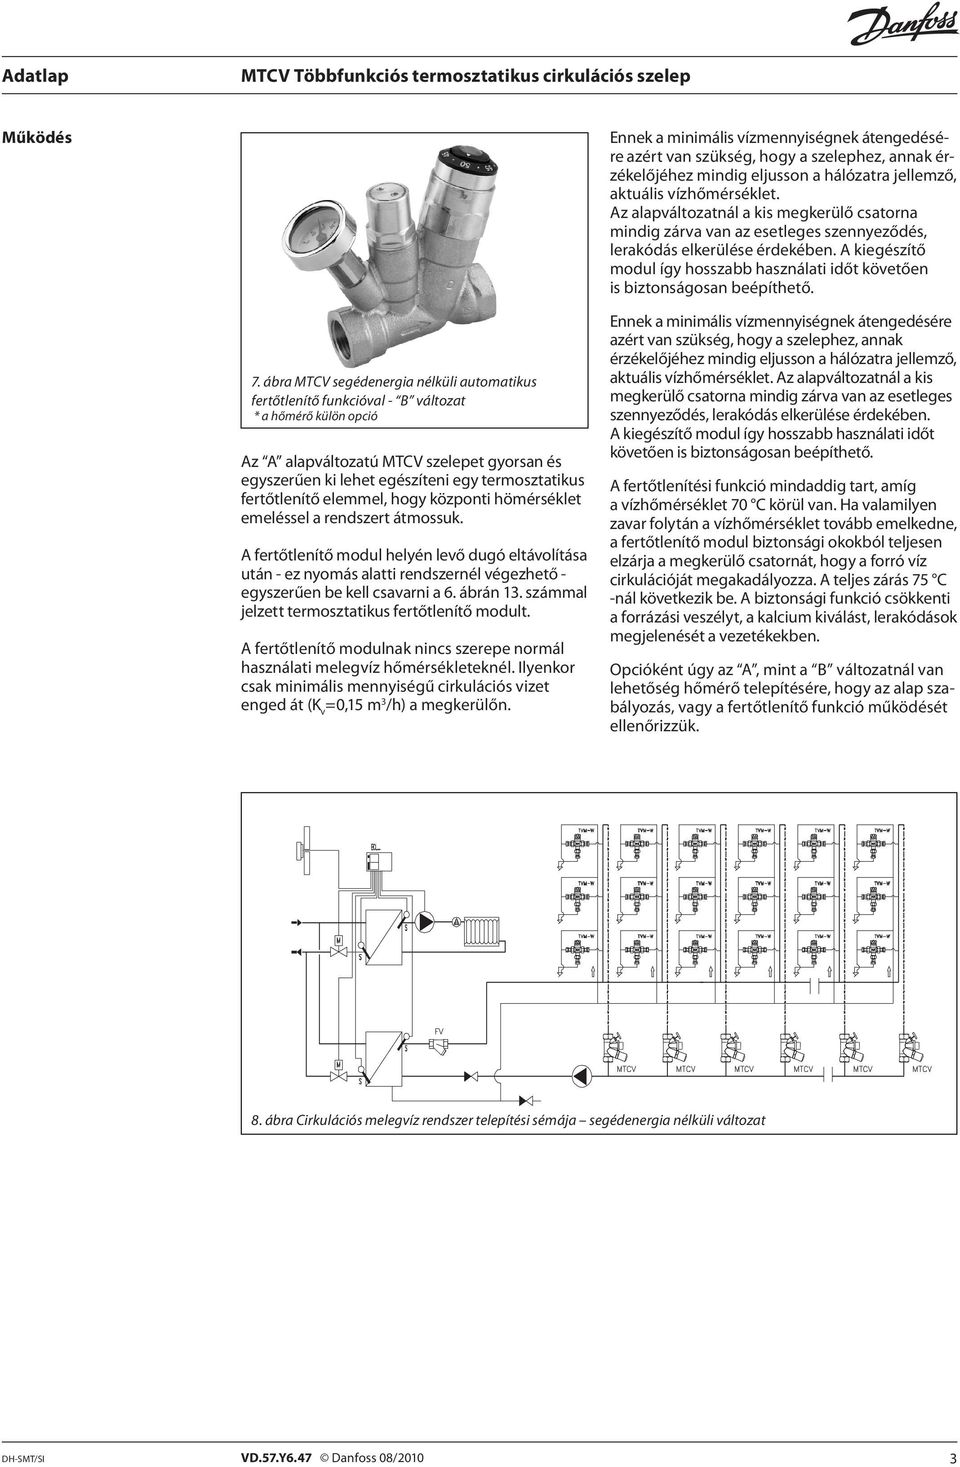 Többfunkciós termosztatikus Cirkulációs szelep - MTCV - PDF Free Download